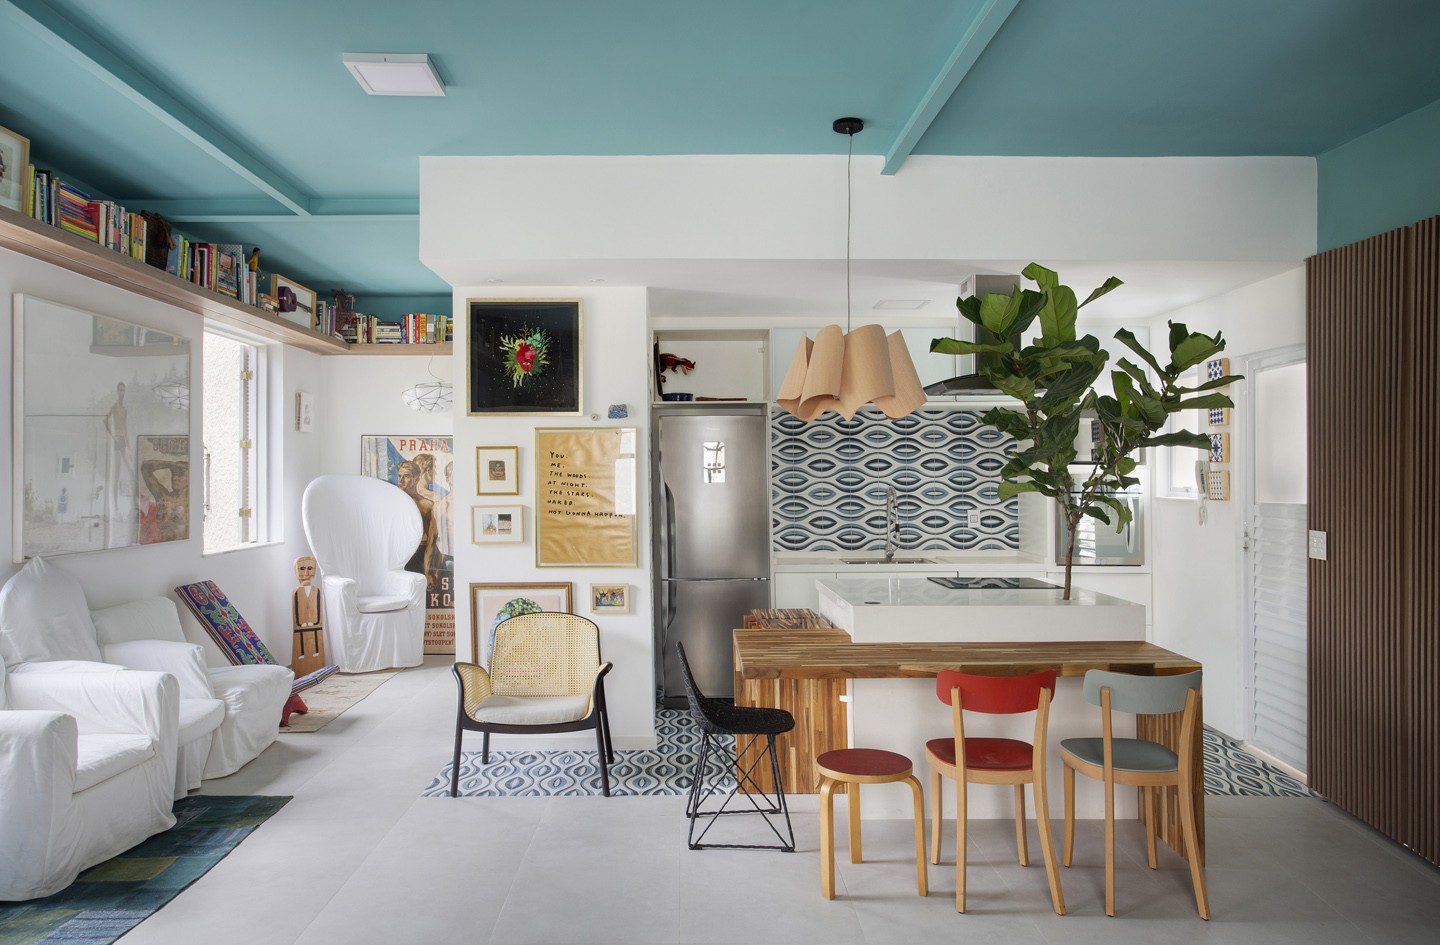 Cozinha branca com, cadeiras coloridas, planta e Ladrilho Hidráulico